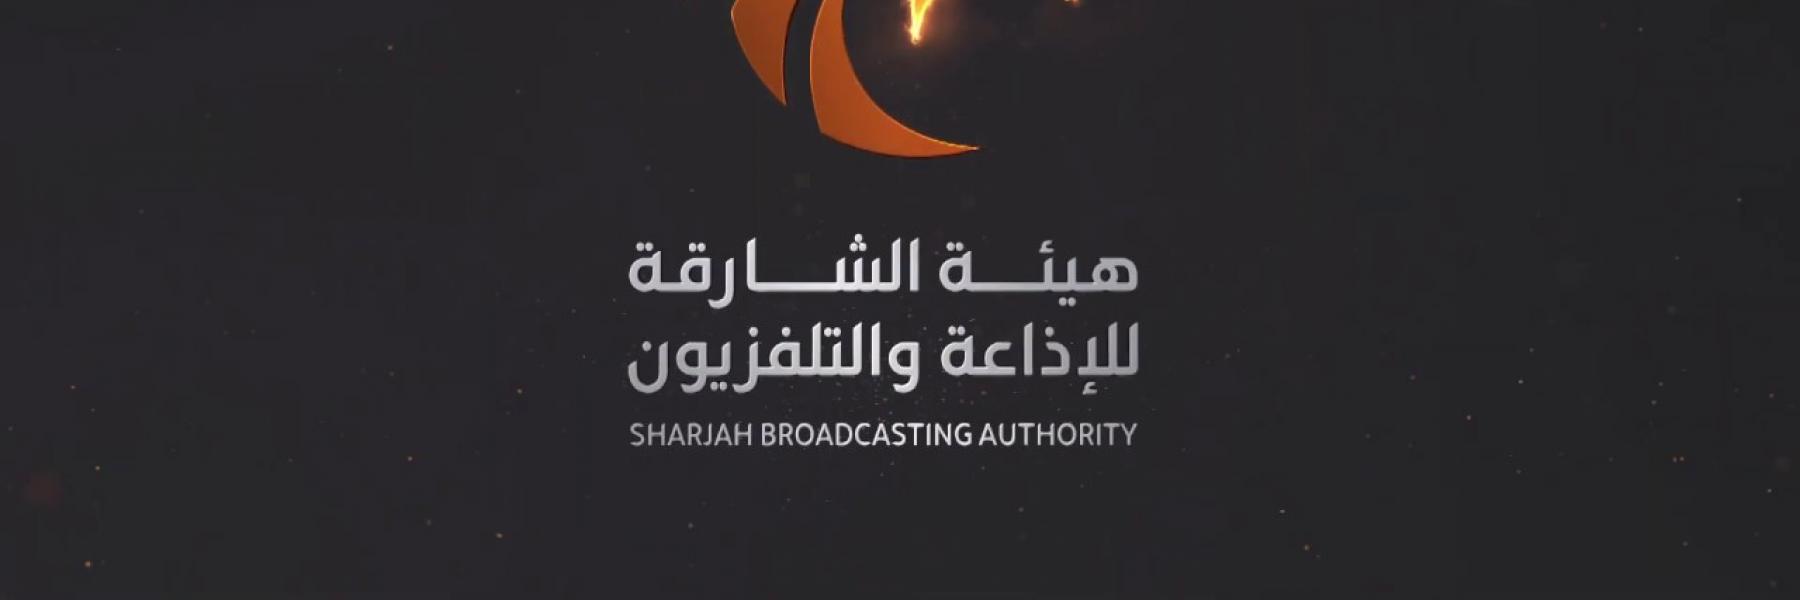 رمضان غير لجمهور الشارقة للإذاعة والتلفزيون